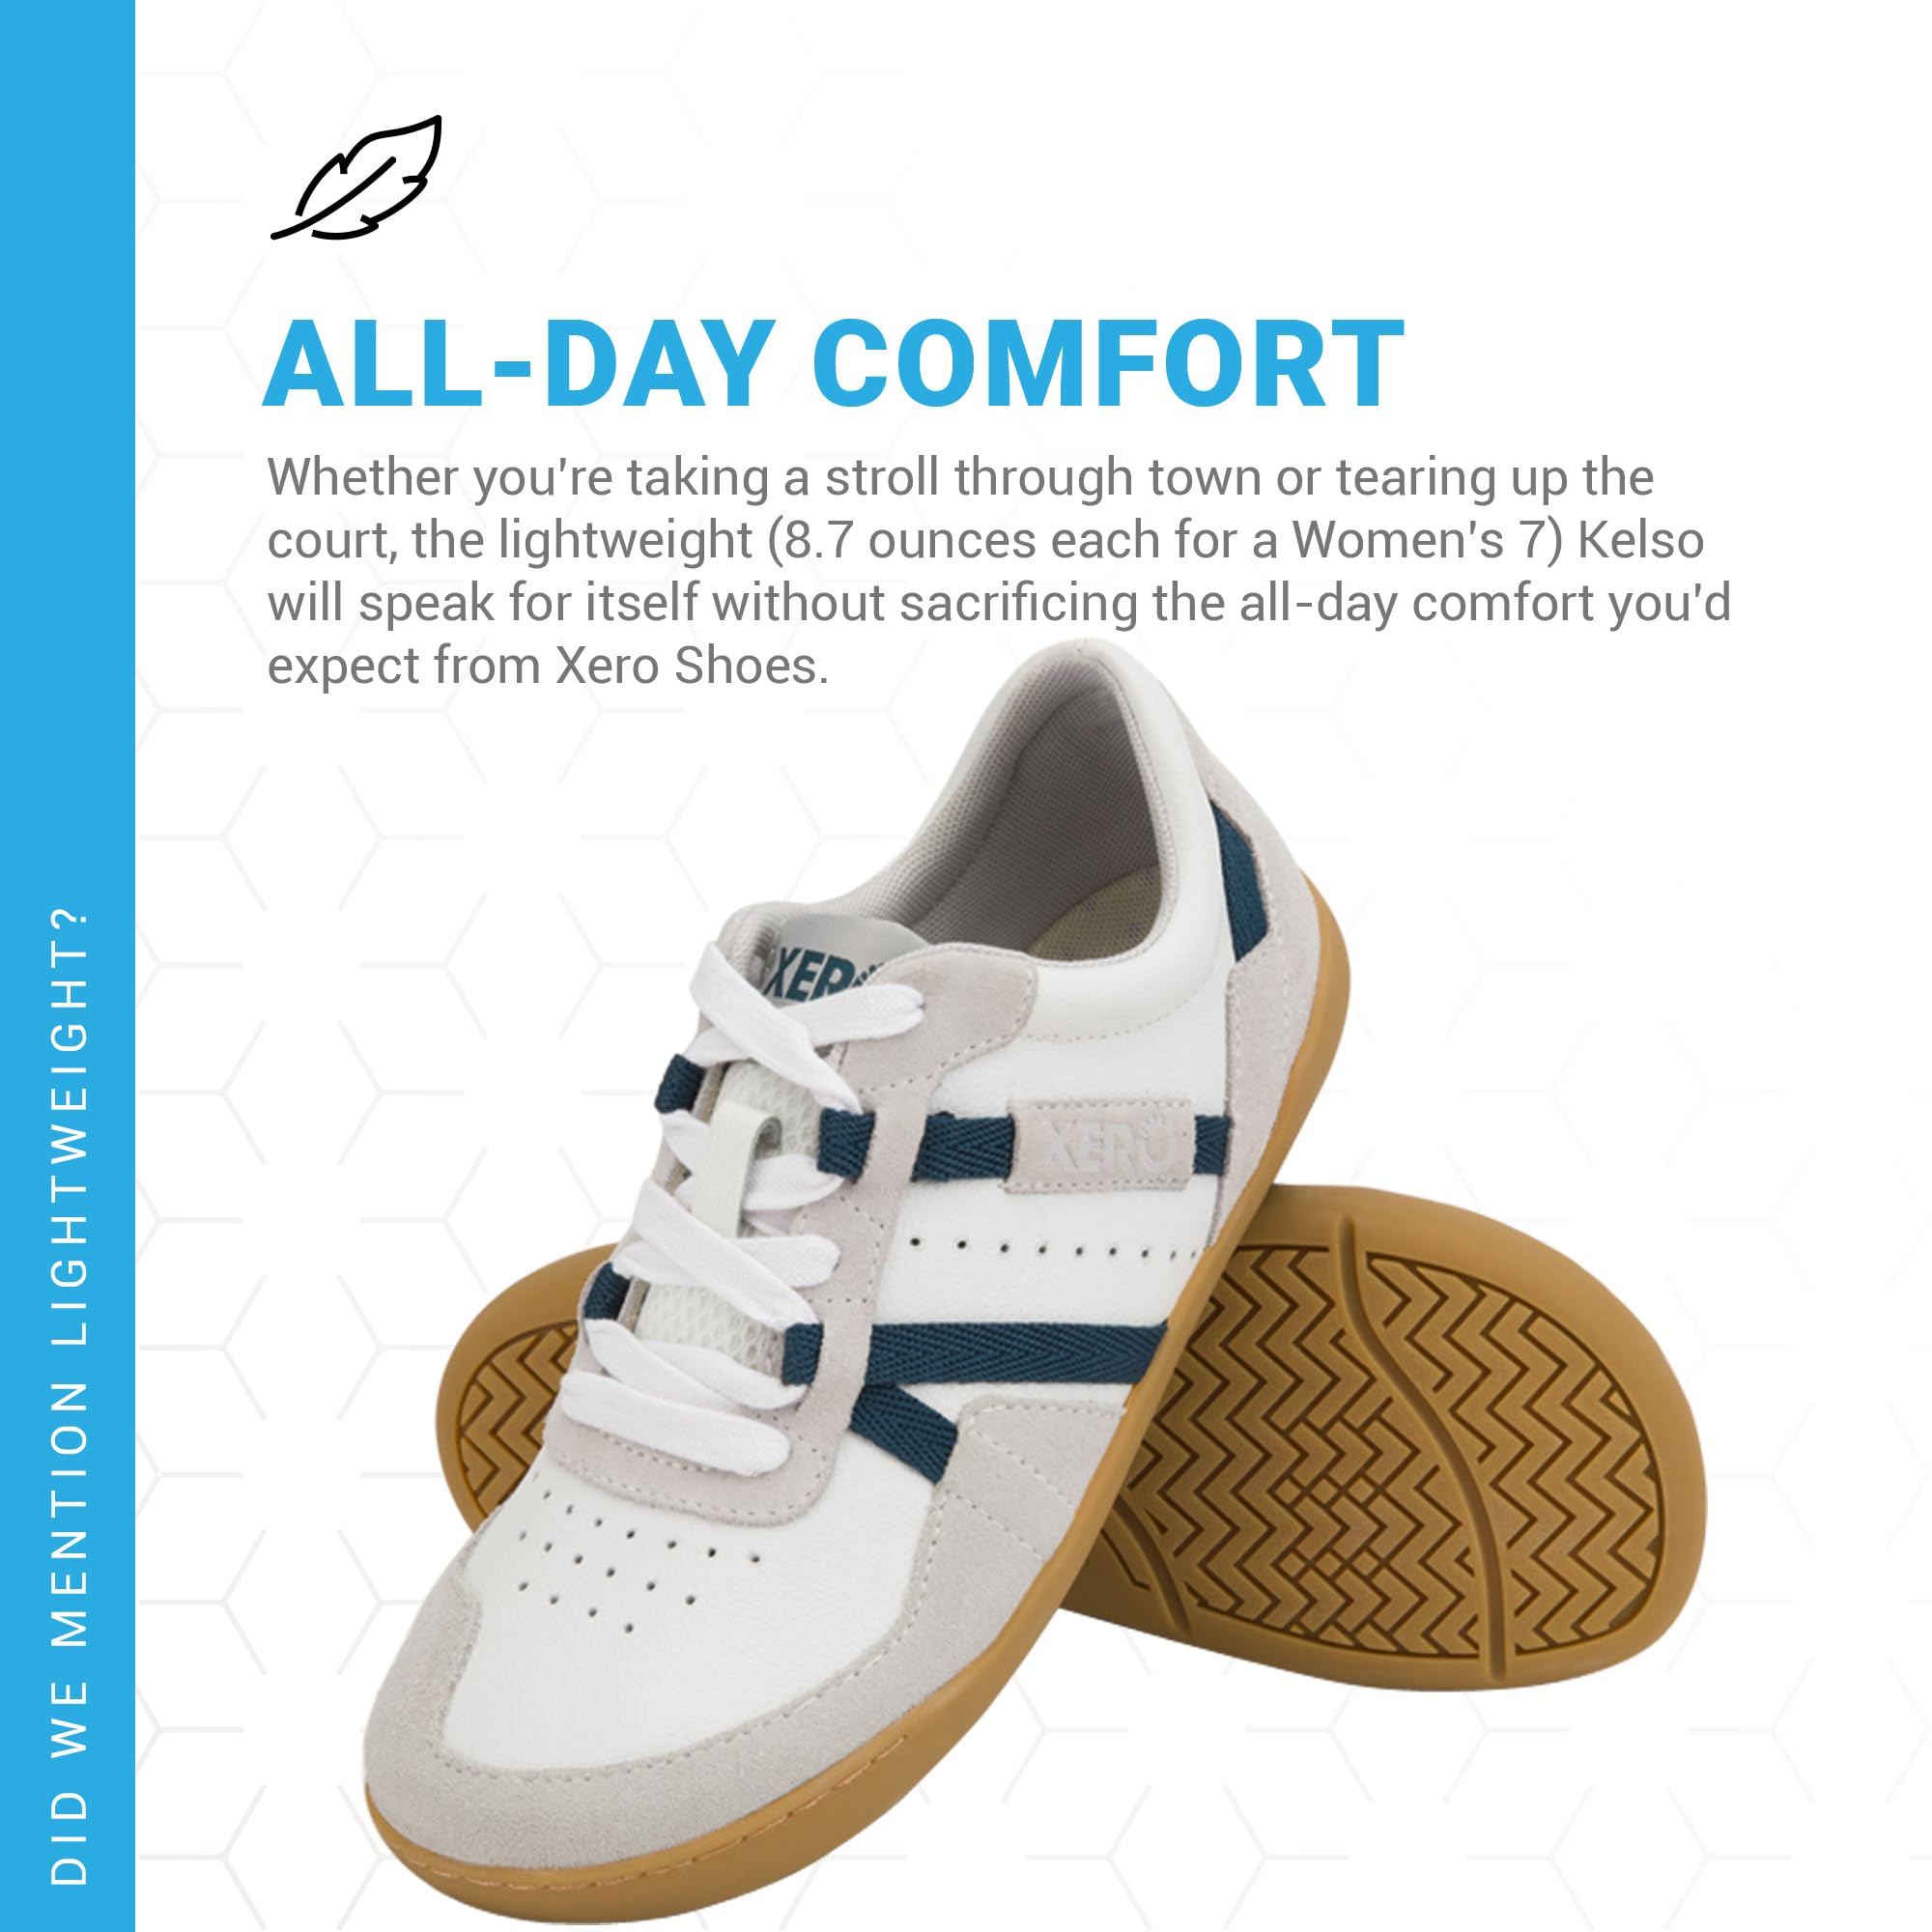 Xero Shoes Kelso Shoes for Women — Tennis, Walking, Work & Nursing Women's Shoes — Barefoot Feel, Zero Drop Heel, Wide Toe Box, Casual Minimalist Footwear — White, Size 7